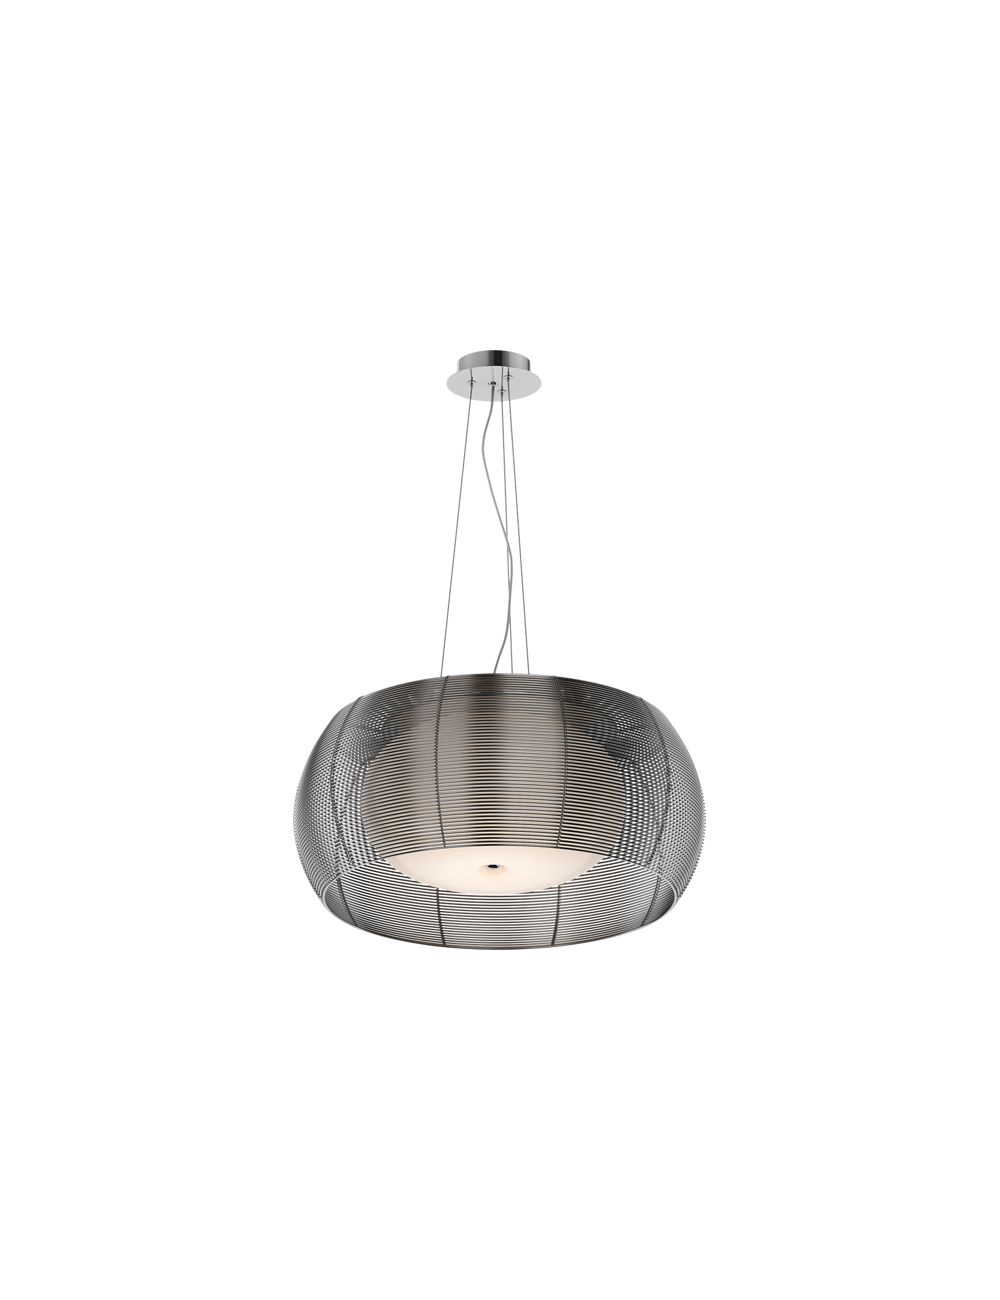 Lampa wisząca metalowa z kloszem szklanym srebrna 50 cm Tango MD1104-2L (silver)